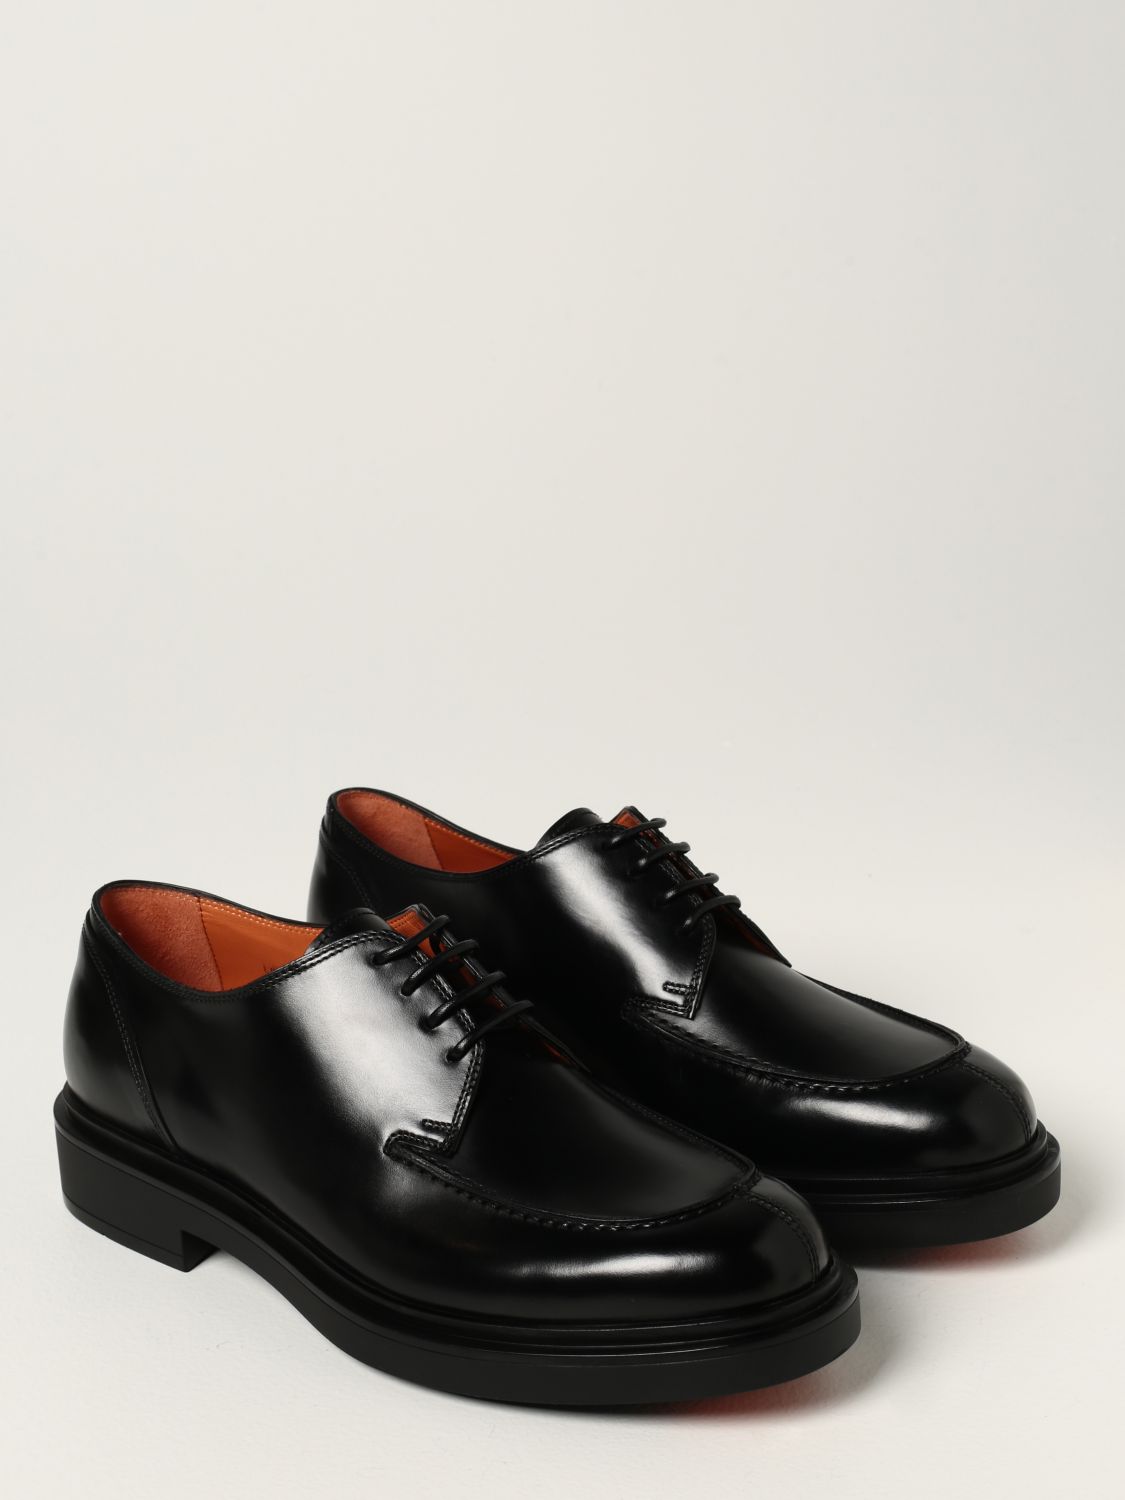 Hombre Zapatos de Zapatos con cordones de Zapatos Oxford Zapatos con cordones Santoni de Cuero de color Negro para hombre 